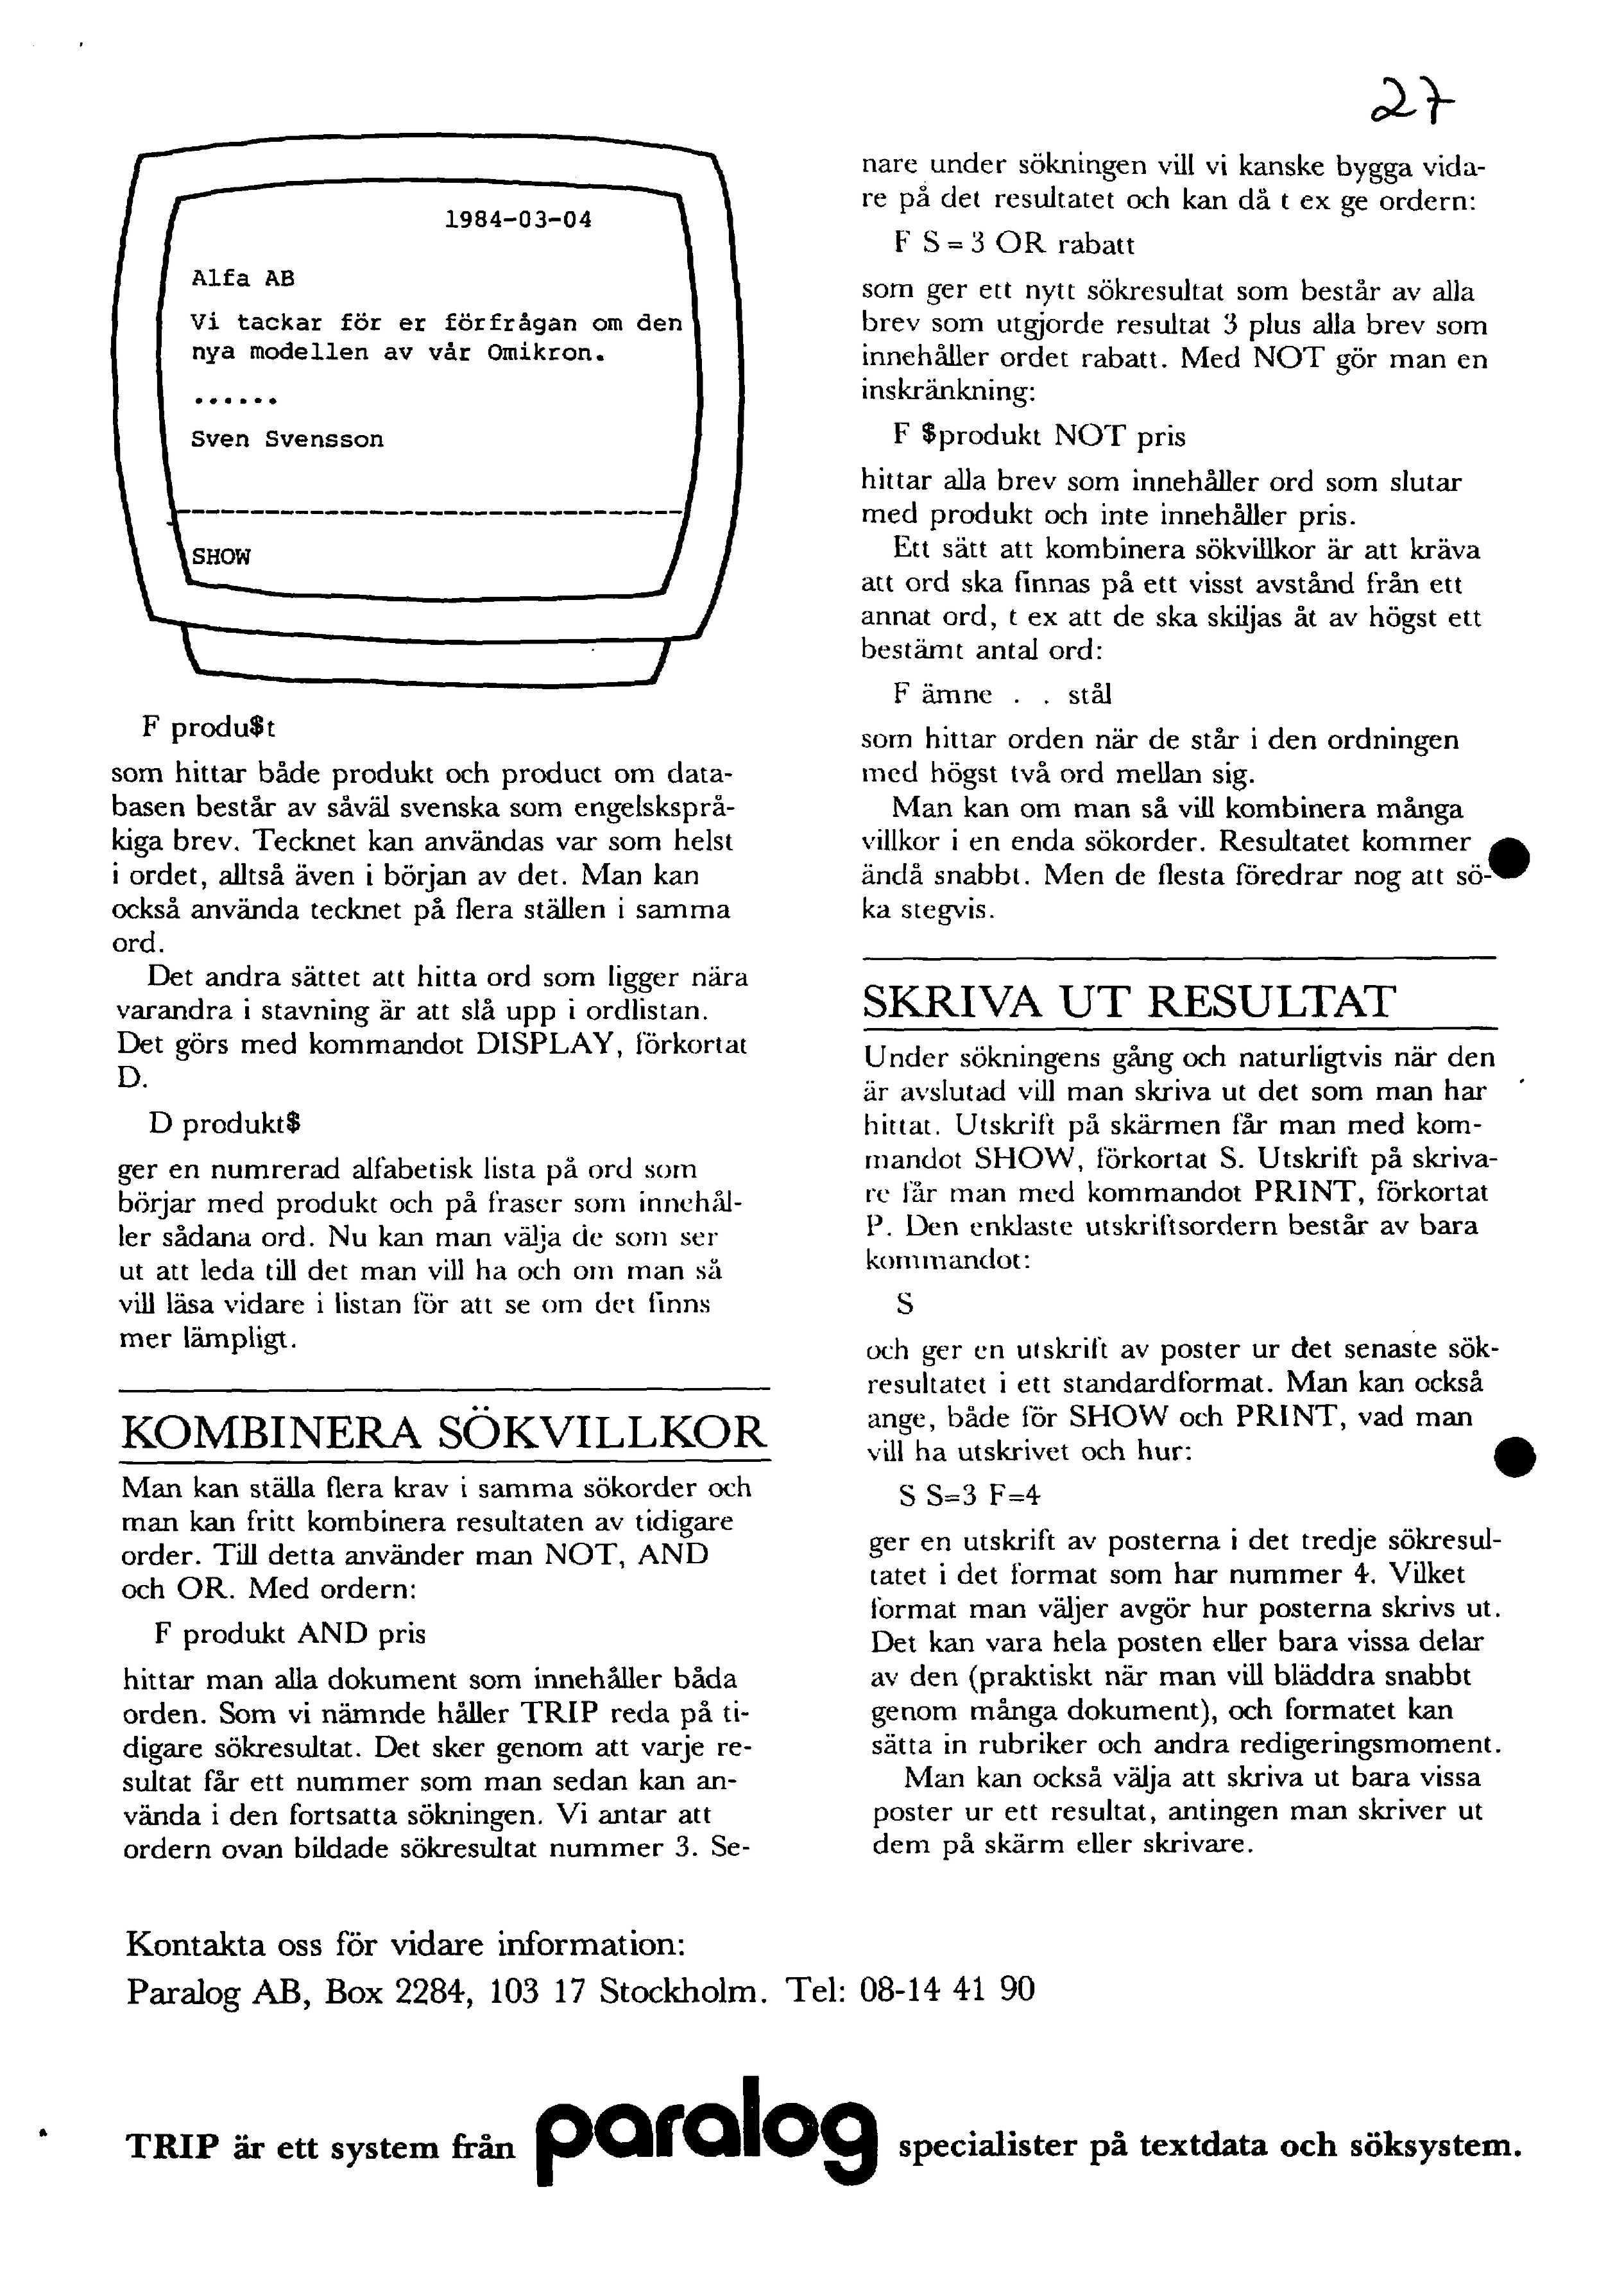 1984-03-04 Vi tackar for er forfrågan om den nya modellen av vår Omikron. Sven Svensson F produ$t som hittar både produkt och product om databasen består av såvål svenska som engelskspråkiga brev.